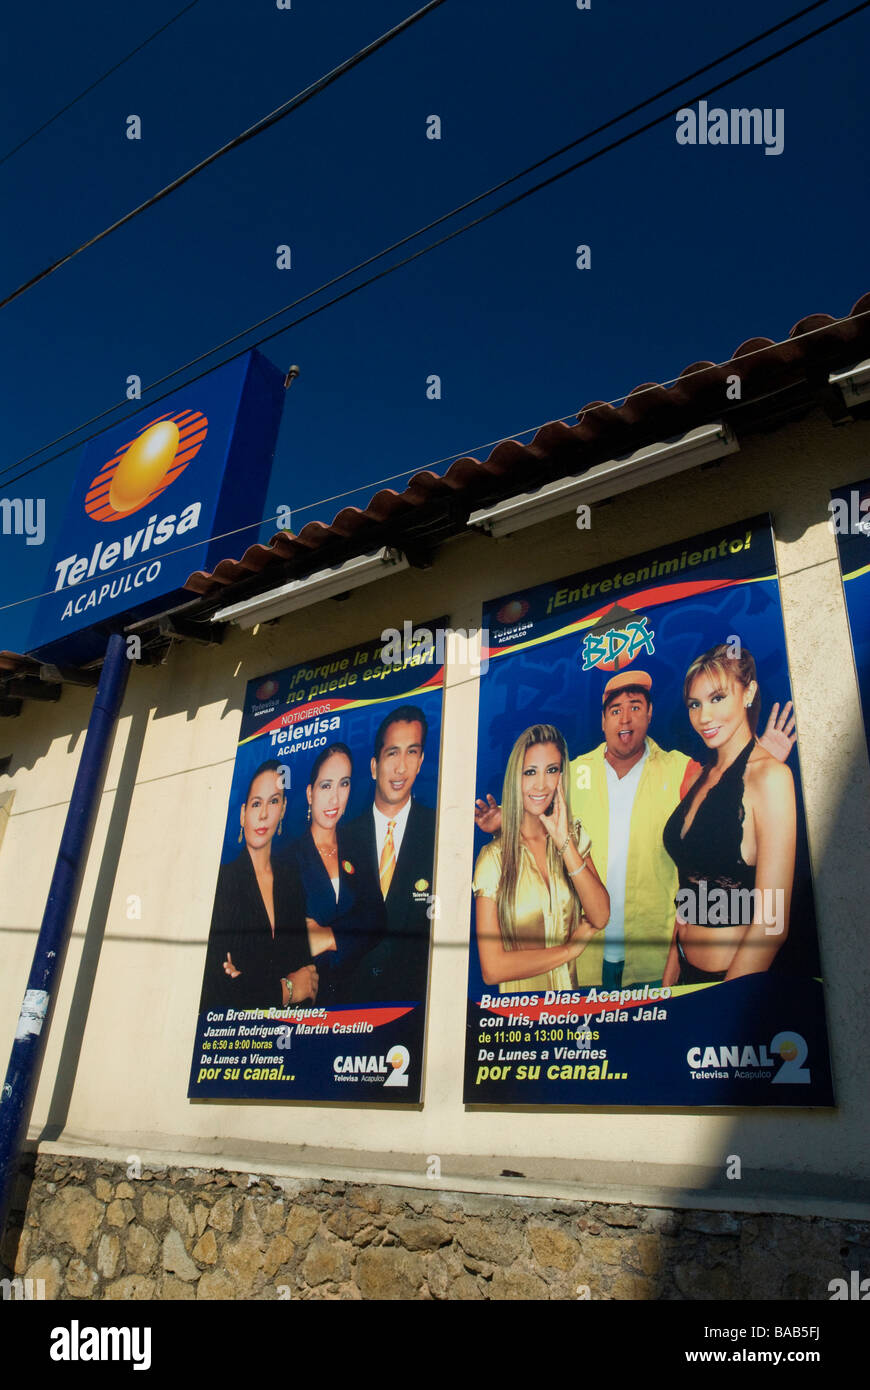 Con Hispanic newscasters vallas para emisoras radio y televisión mexicana, "Televisa Acapulco'. Acapulco, México Fotografía de stock Alamy